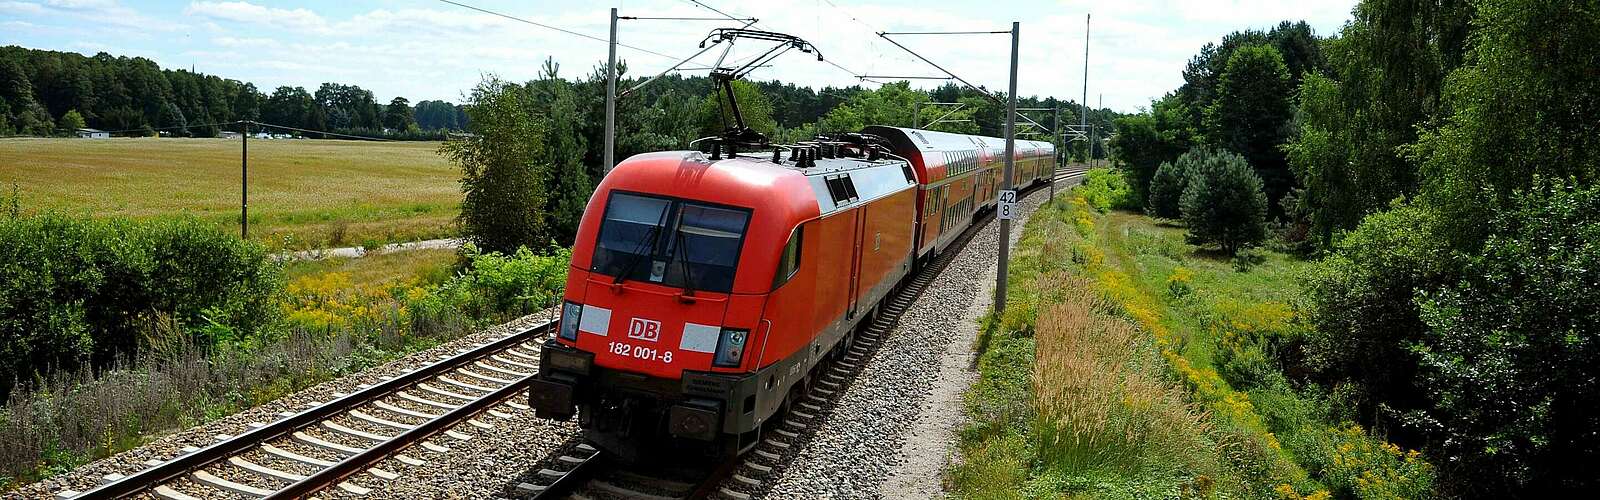 Regionalexpress von DB Regio Nordost,
        
    

        Foto: Deutsche Bahn AG/Jet-Foto Kranert